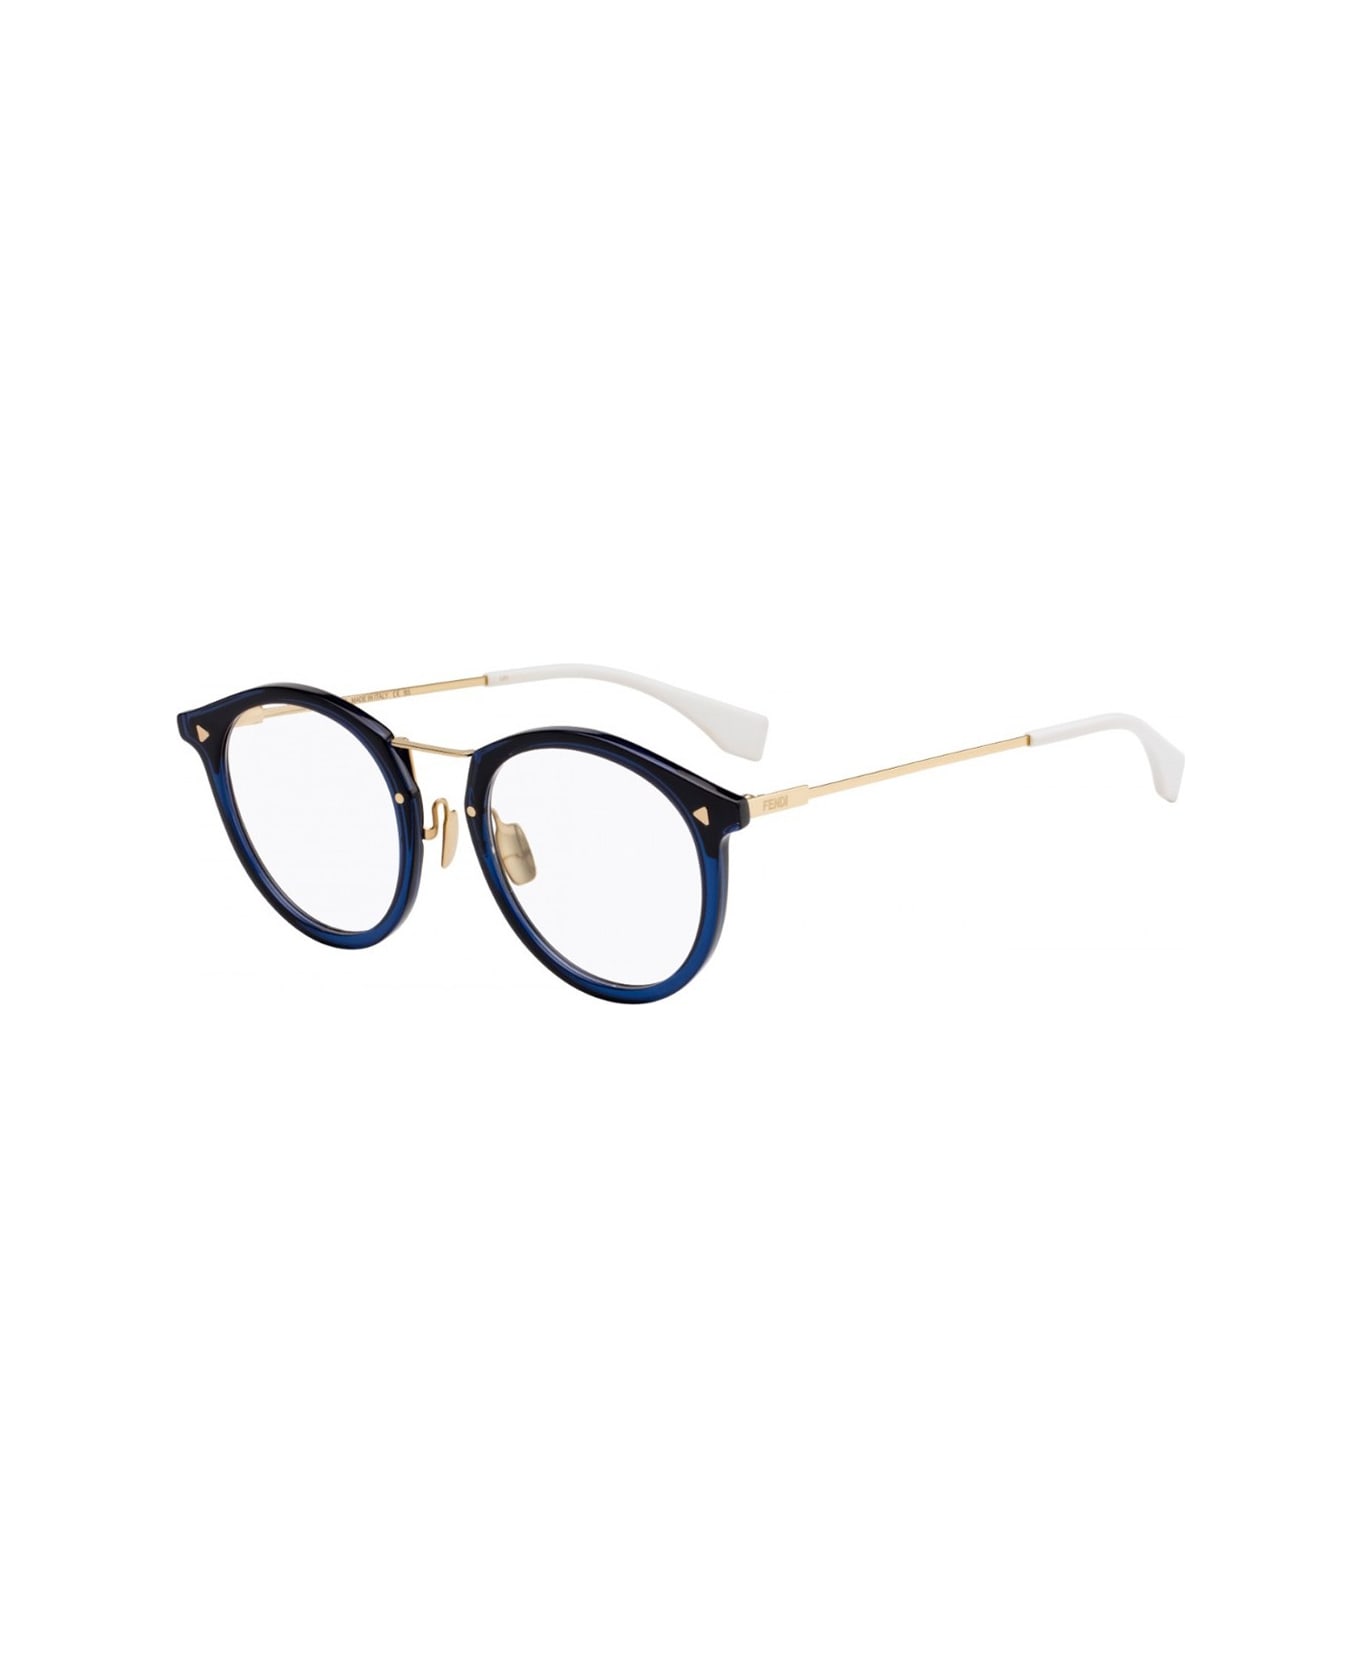 Fendi Eyewear Ff M0050 Glasses - Blu